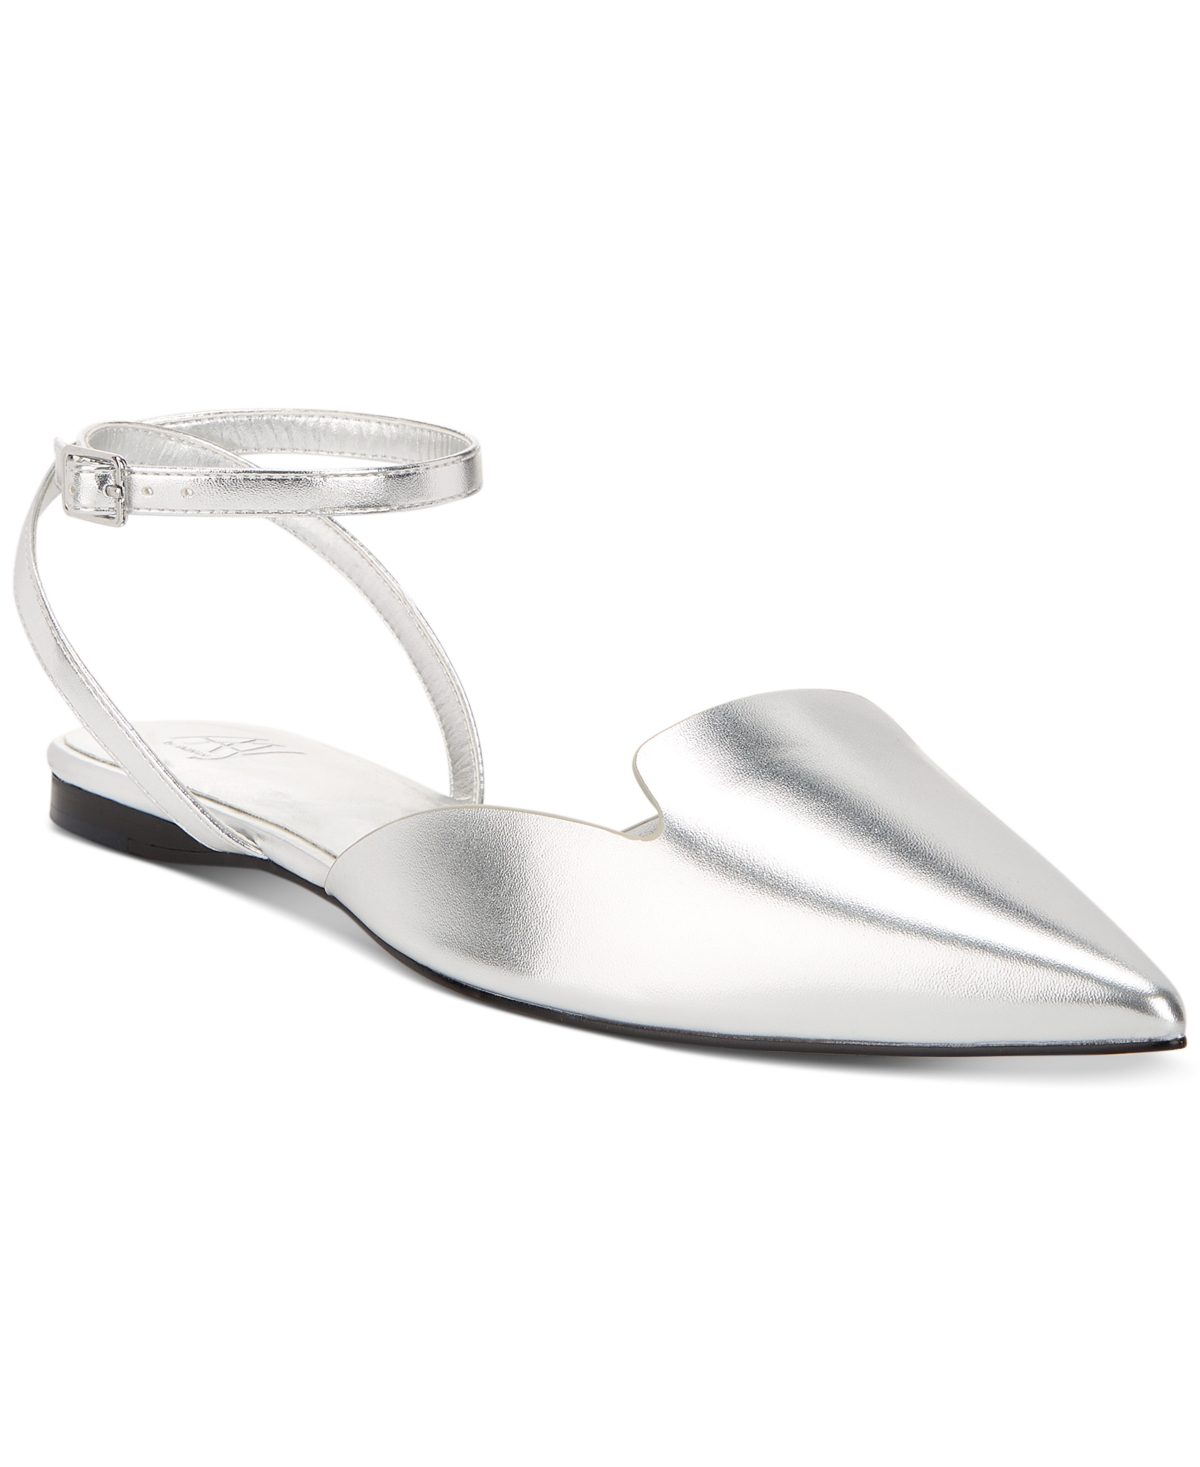 Women's Talia Open Back Ankle Strap Flats - Silver